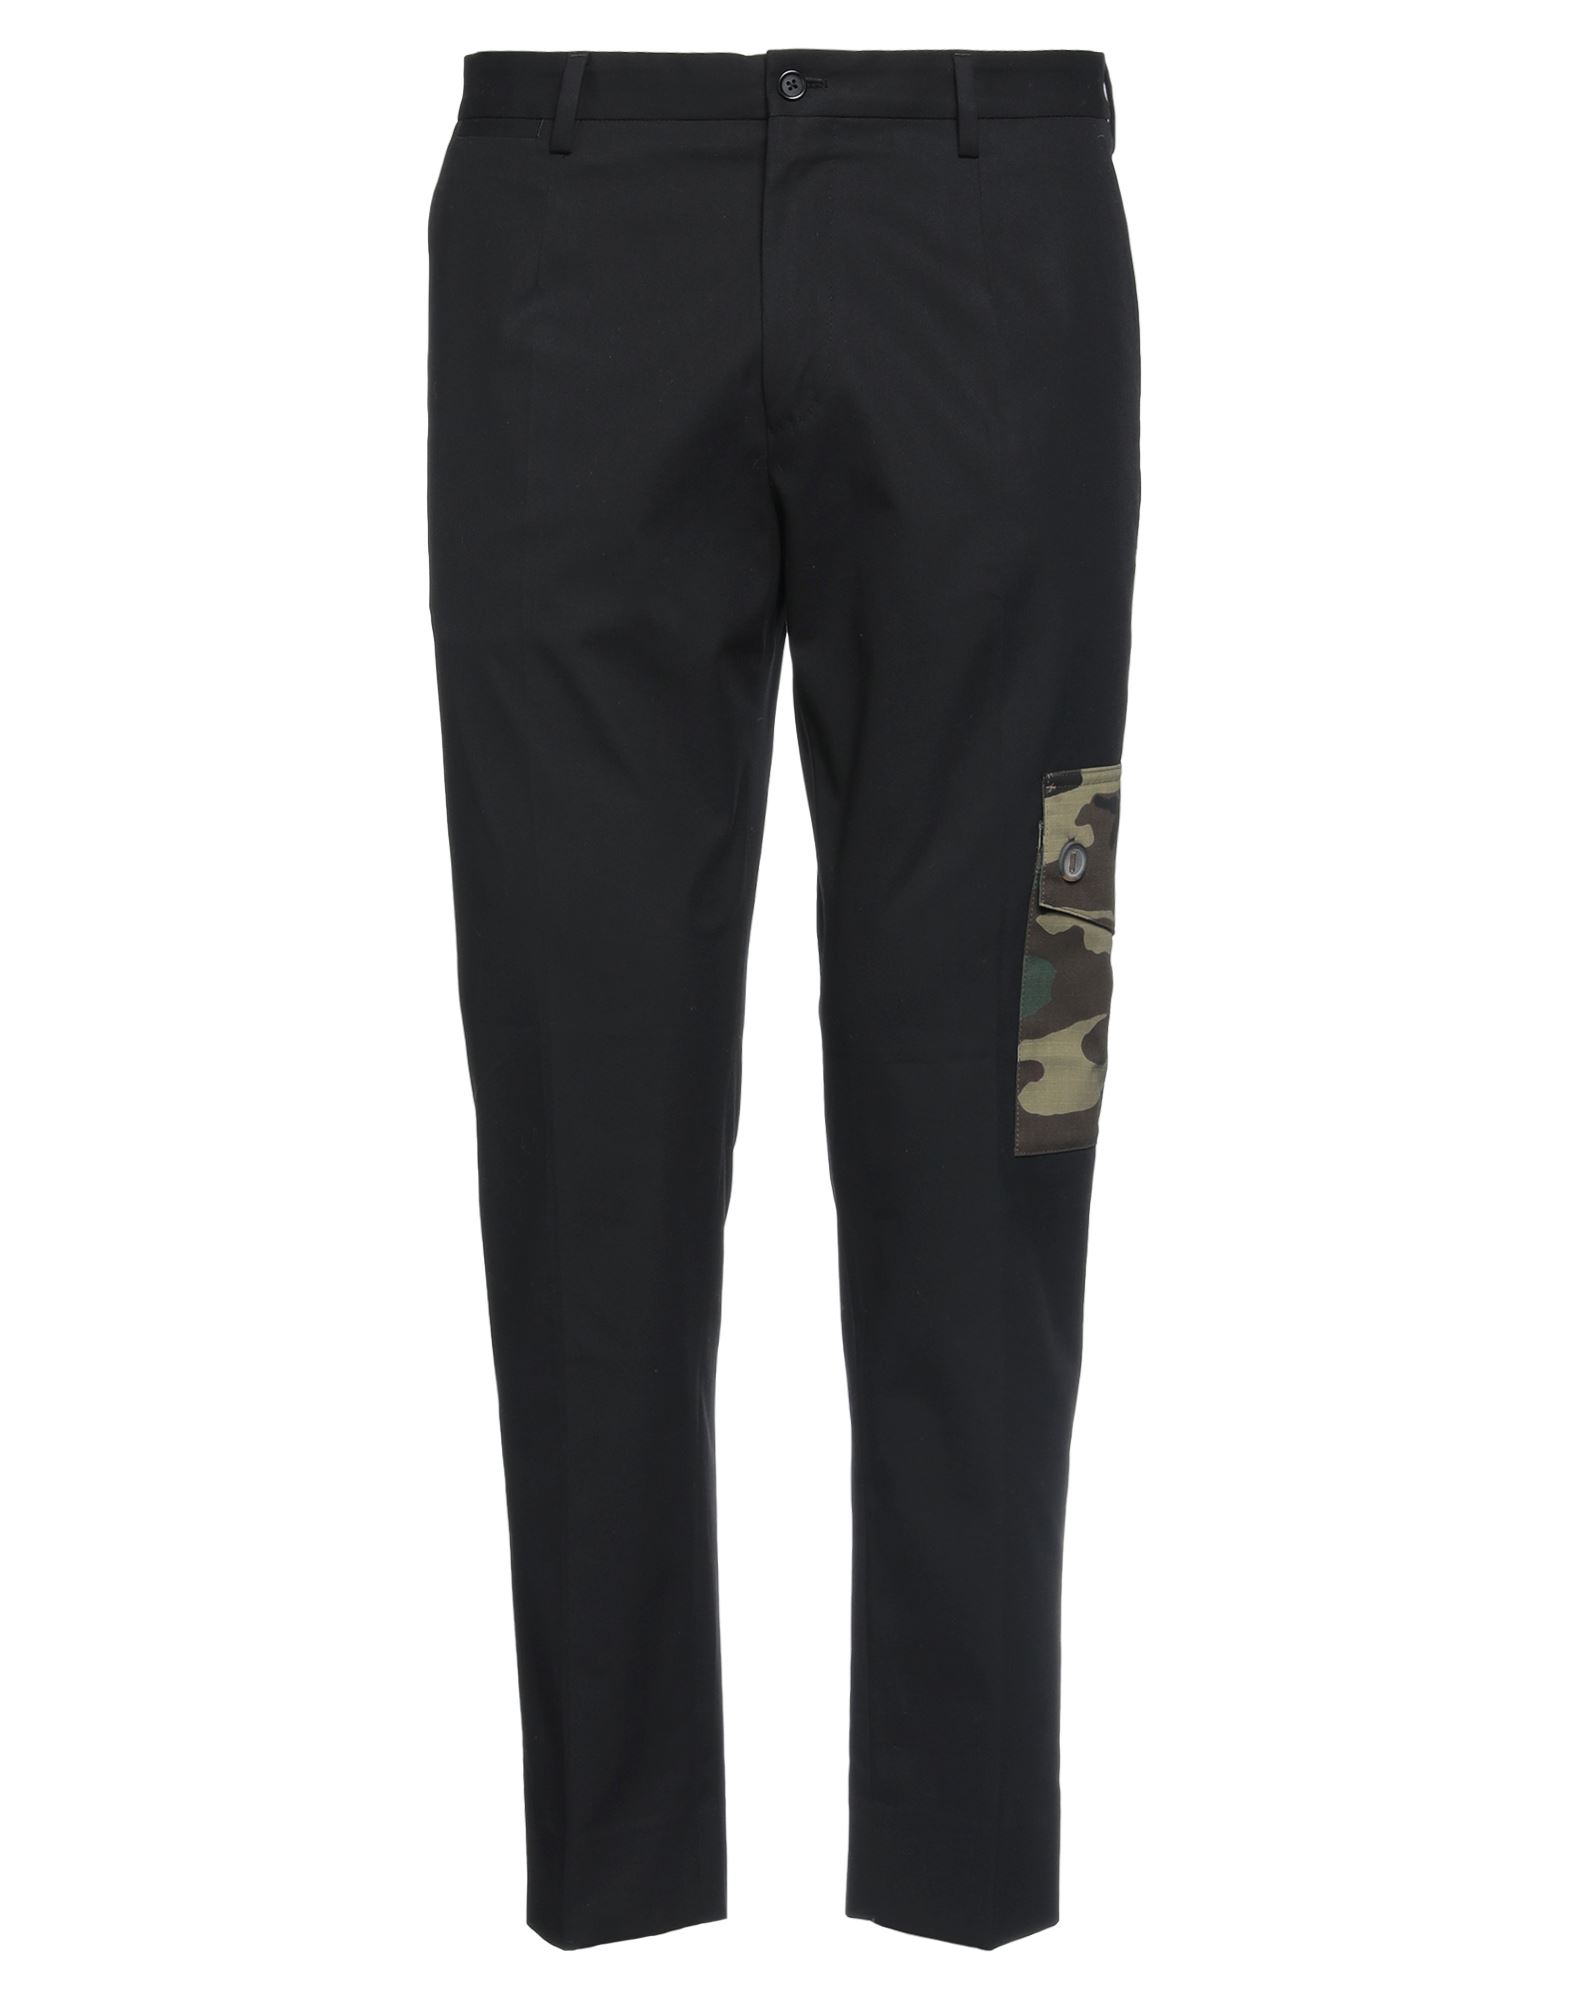 Dolce & Gabbana Man Pants Black Size 40 Cotton, Elastane